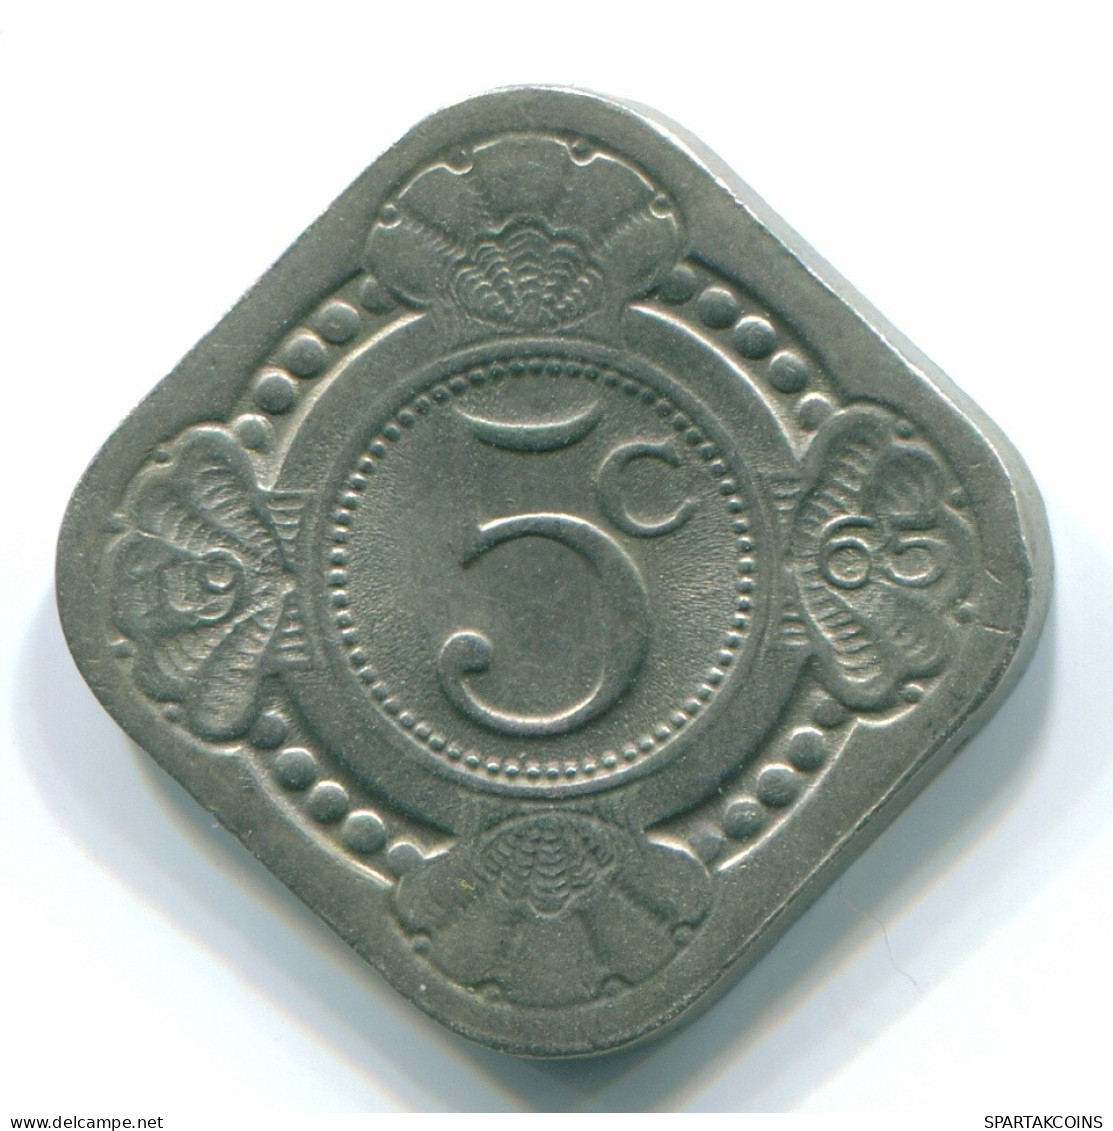 5 CENTS 1965 NIEDERLÄNDISCHE ANTILLEN Nickel Koloniale Münze #S12444.D.A - Niederländische Antillen